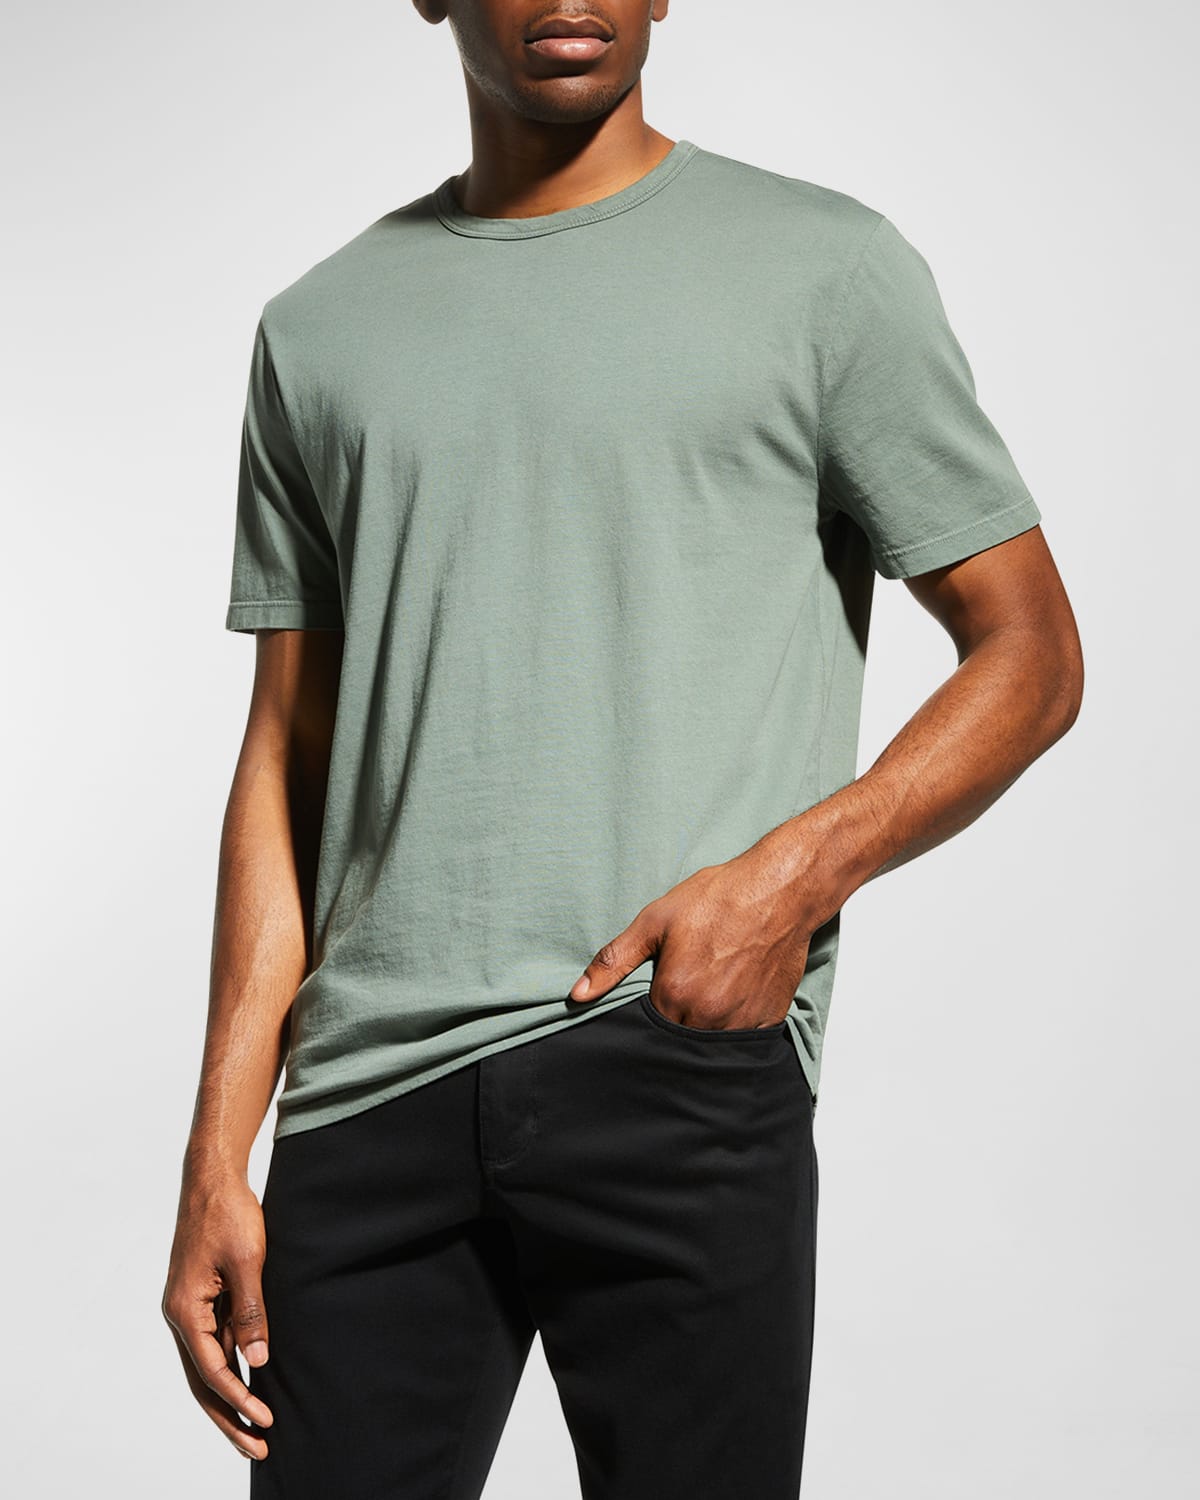 Vince Men's Garment-Dyed Crewneck T-Shirt